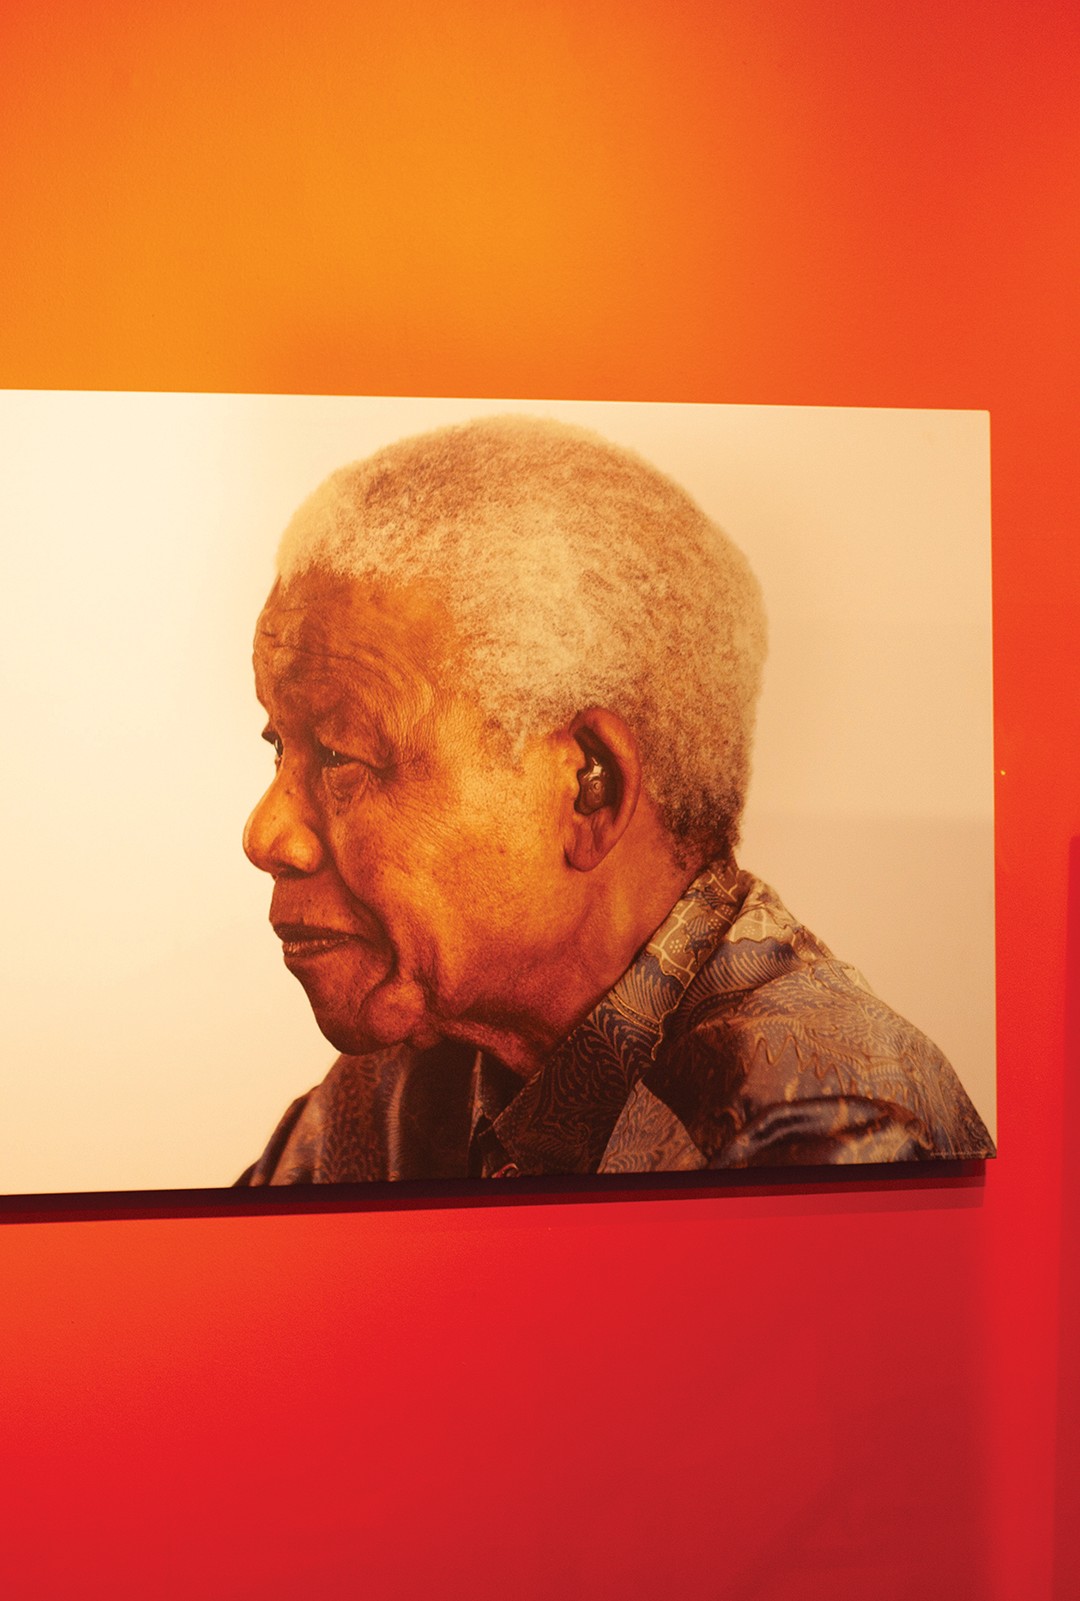 O legado da esperança: Nelson Mandela, um símbolo de liberdade. (Foto: Arthur Seixas)